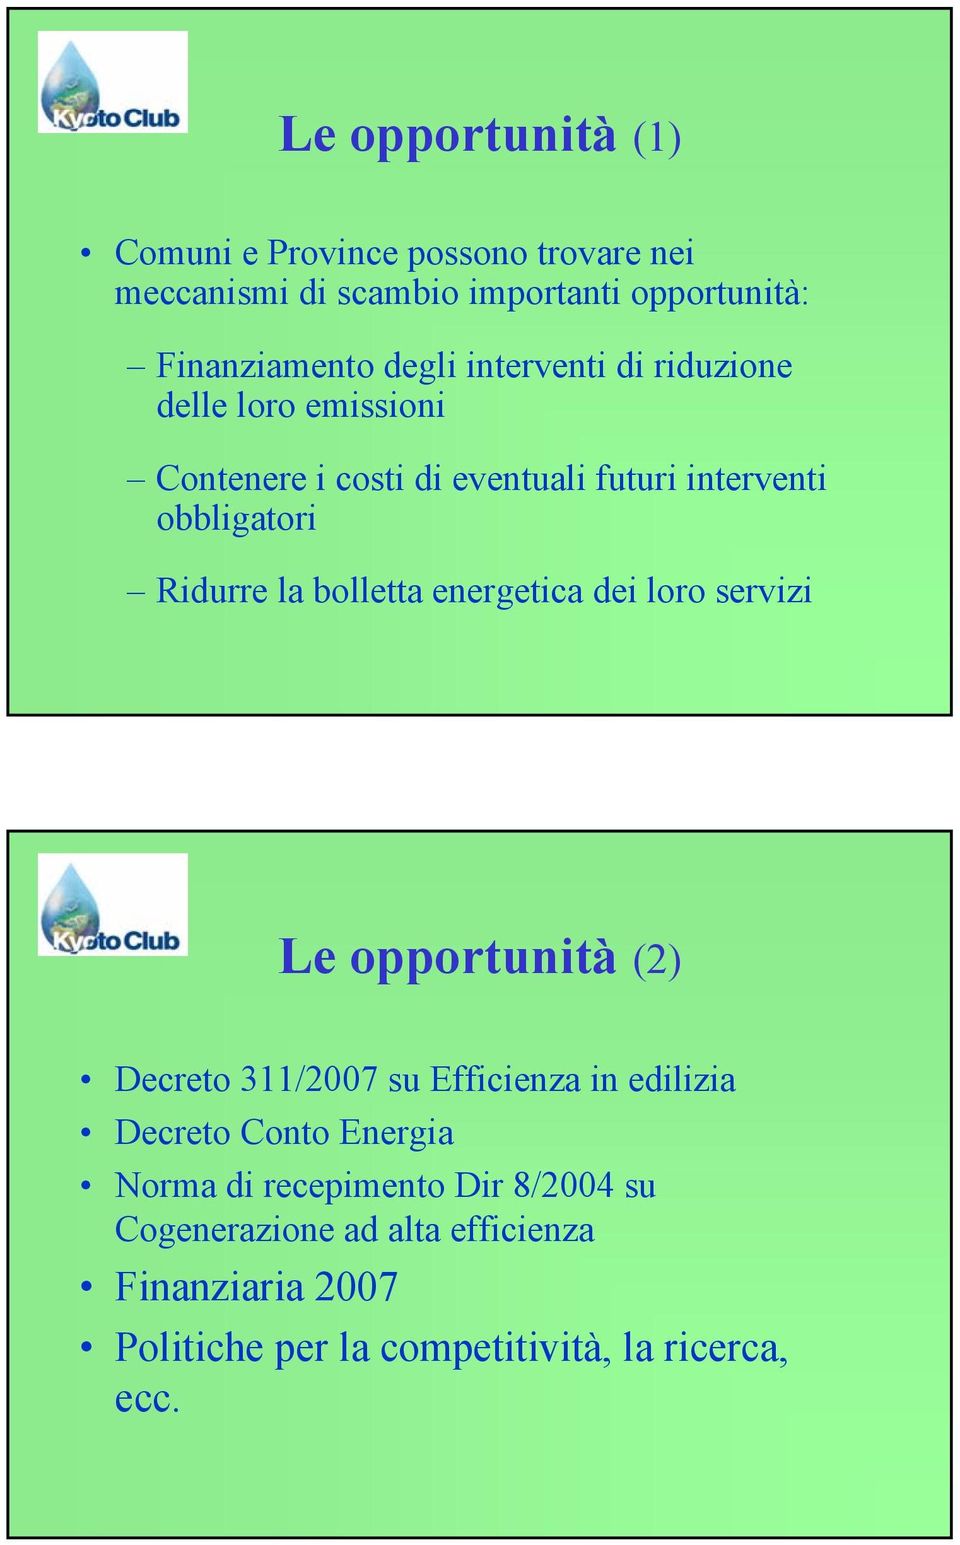 bolletta energetica dei loro servizi Le opportunità (2) Decreto 311/2007 su Efficienza in edilizia Decreto Conto Energia